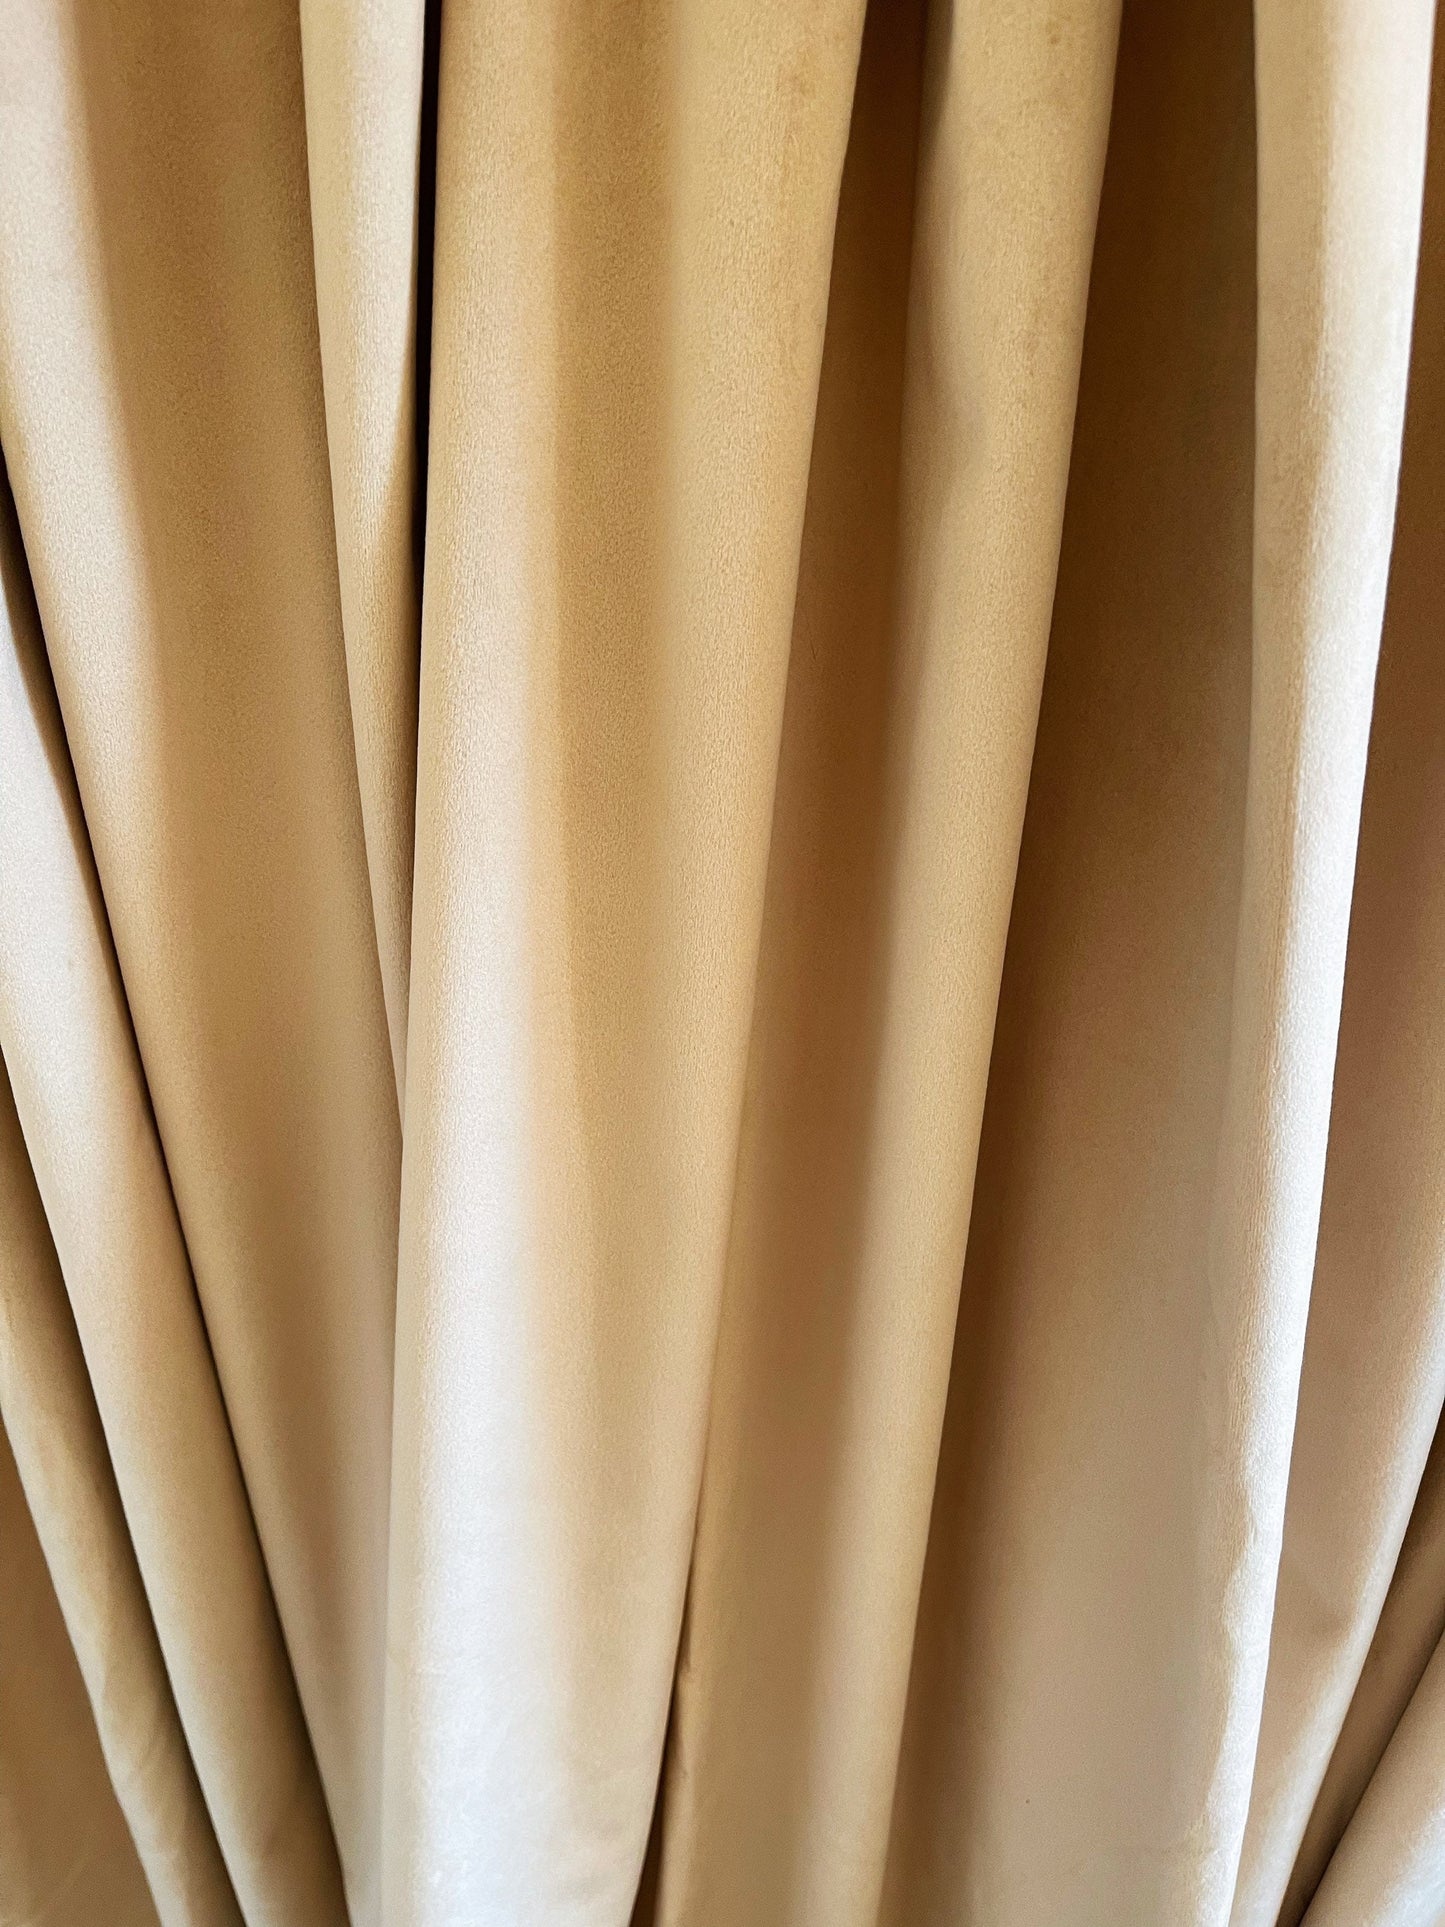 Velvet Curtain | Champagne White Blackout Curtain | velvet curtain panels | Curtain Panels | Custom Curtains